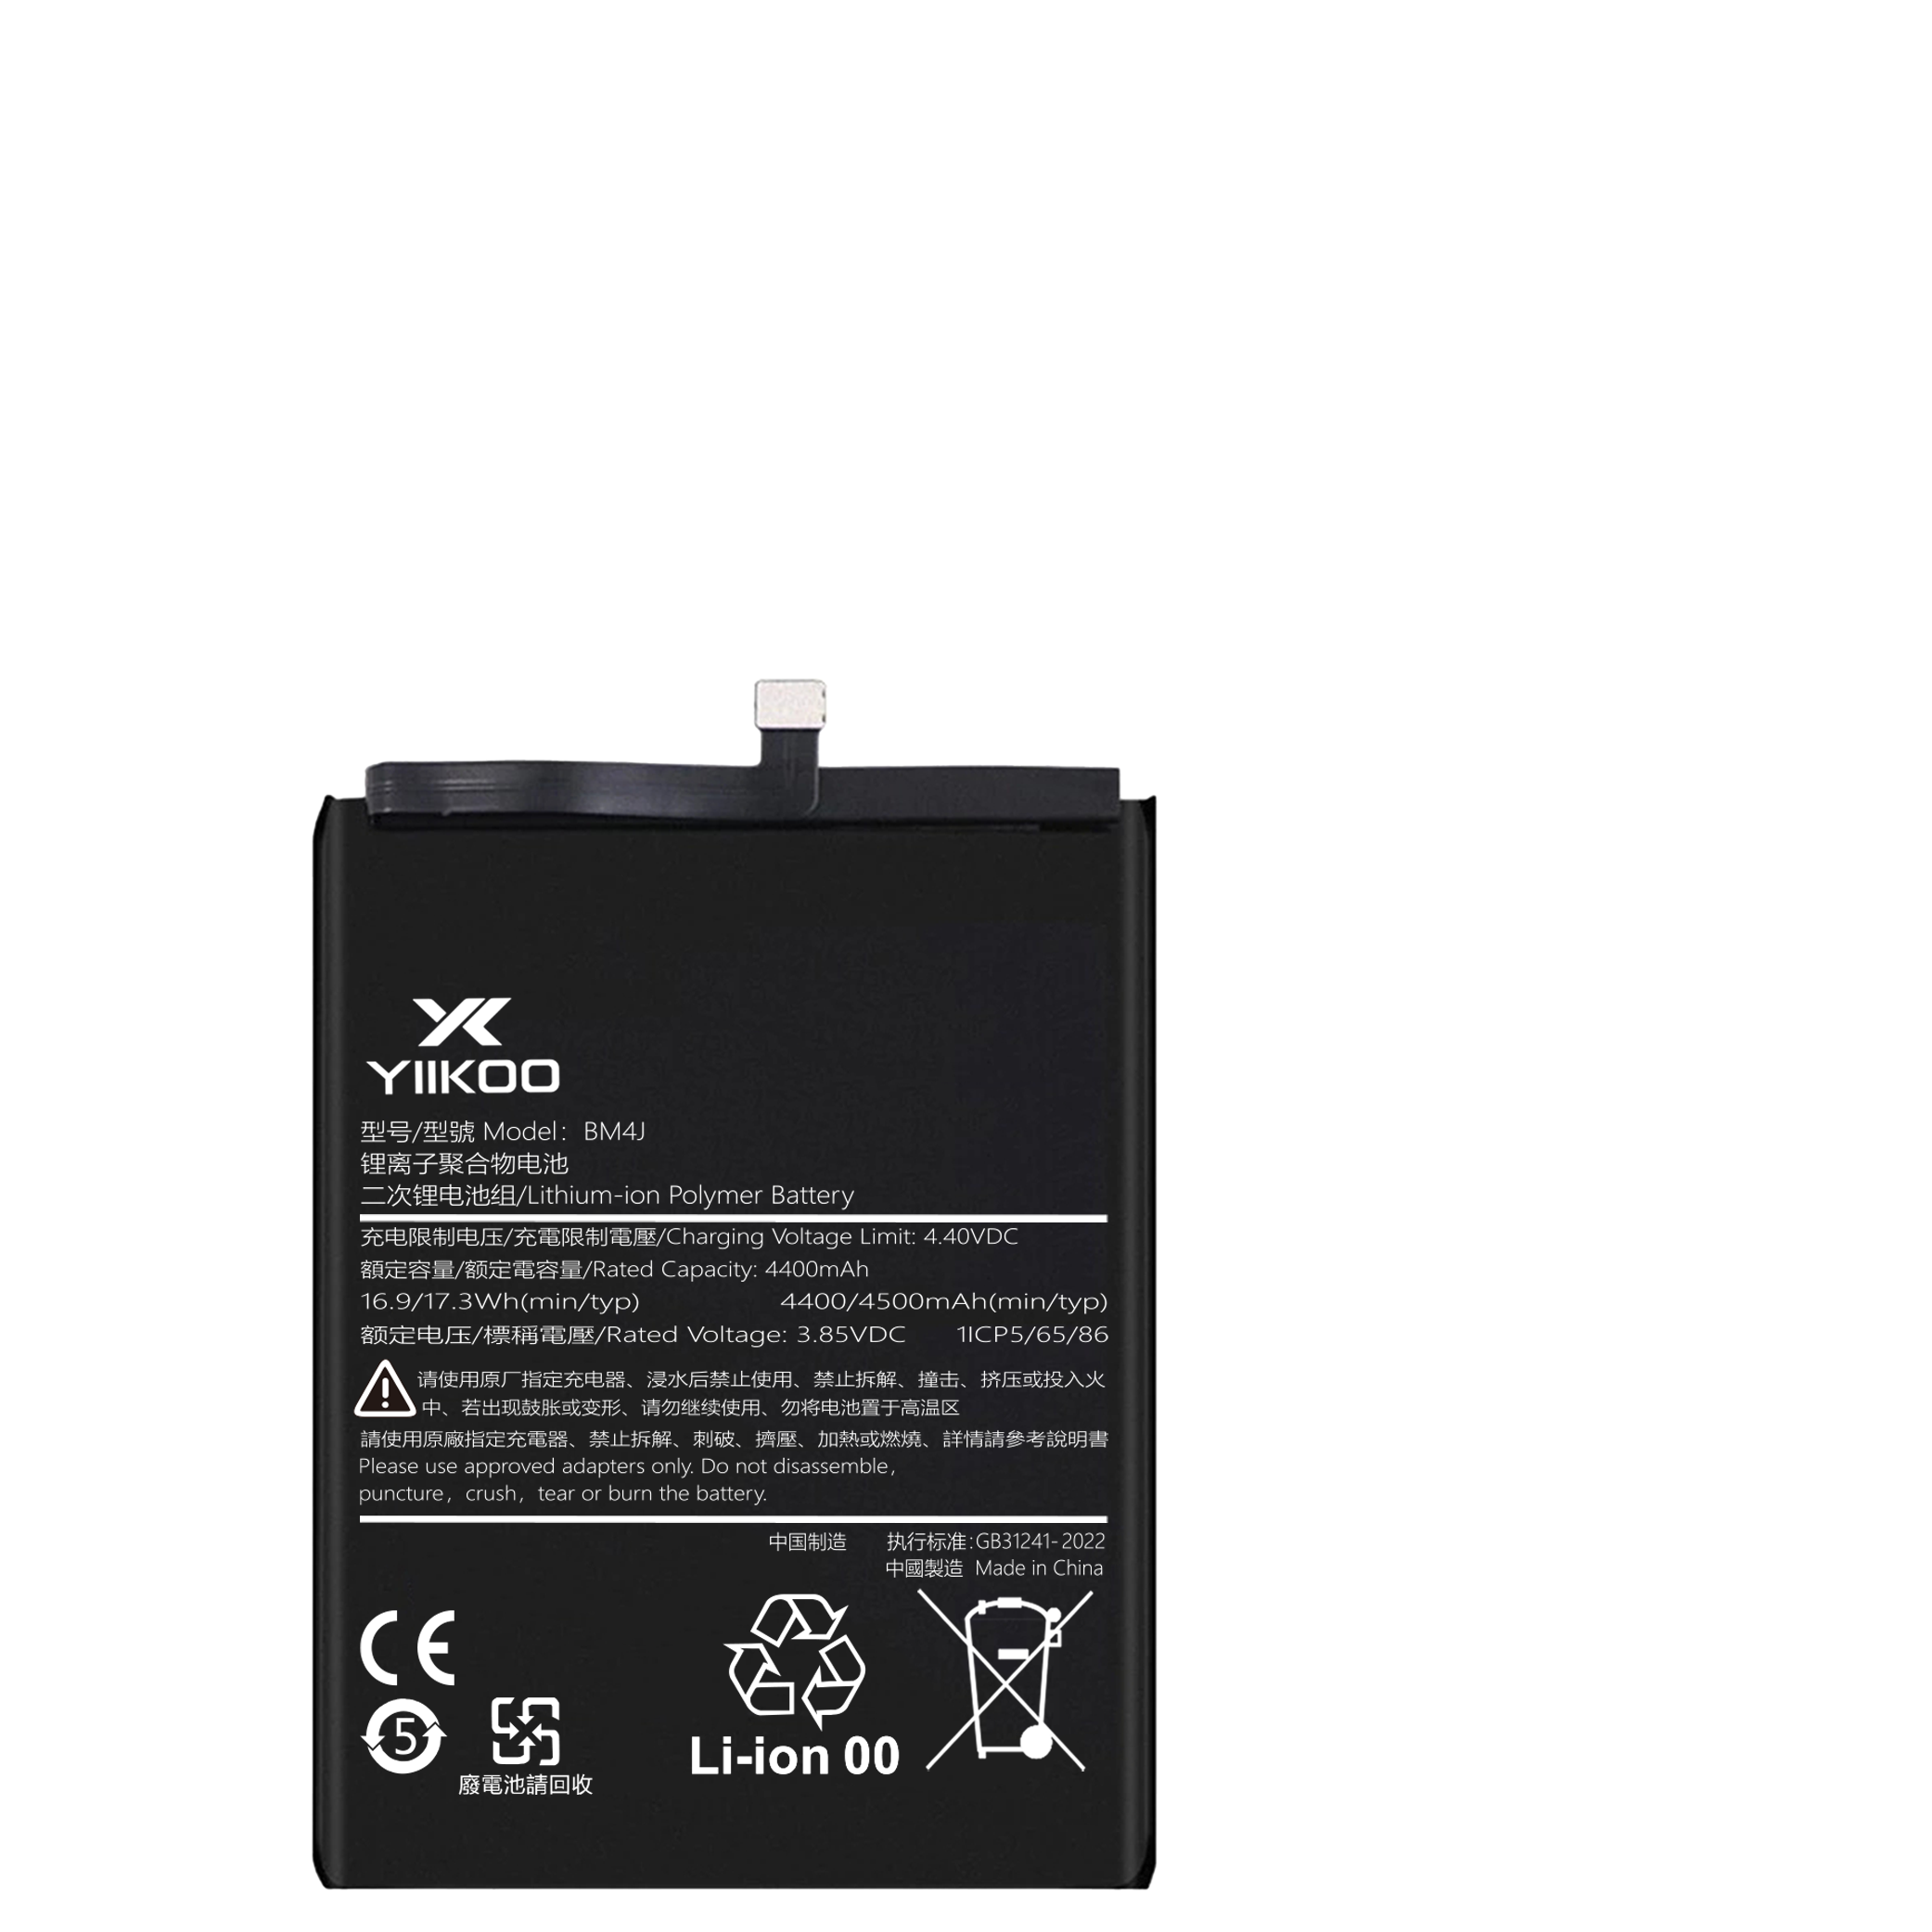 Hongmi Note8pro Battery (4400mAh) BM4J